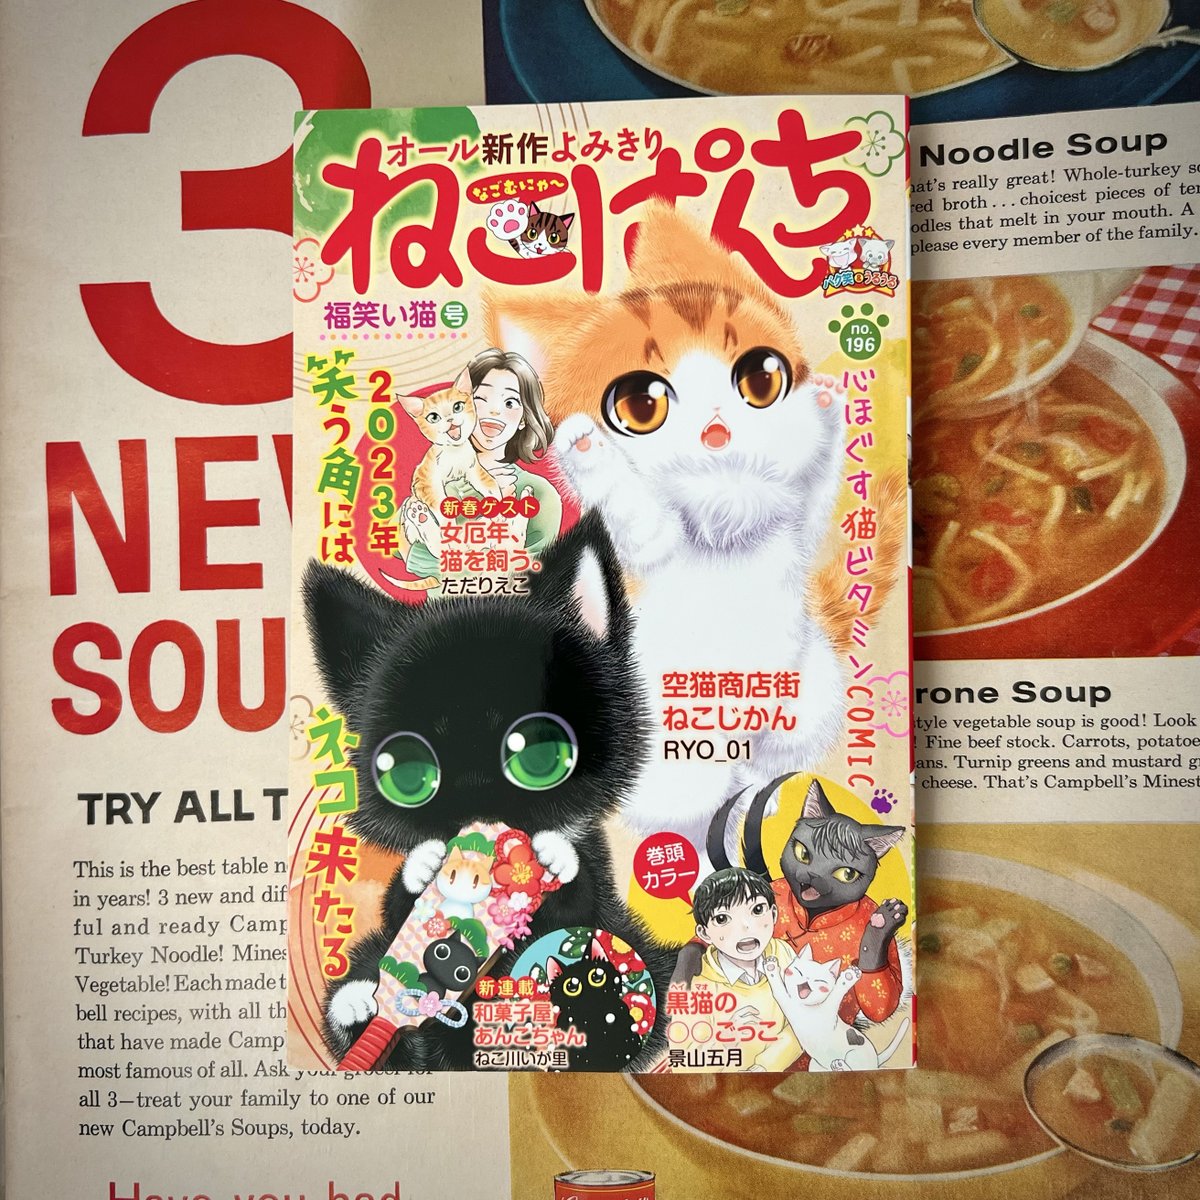 【おしらせ🕵️】本日、12月12日(月)発売の「ねこぱんち 福わらい猫号」にて、読み切り漫画『猫のキャロル』が掲載されています。猫と探偵が出会った頃の思い出のお話です。どうぞよろしくおねがいします🐱✨ 